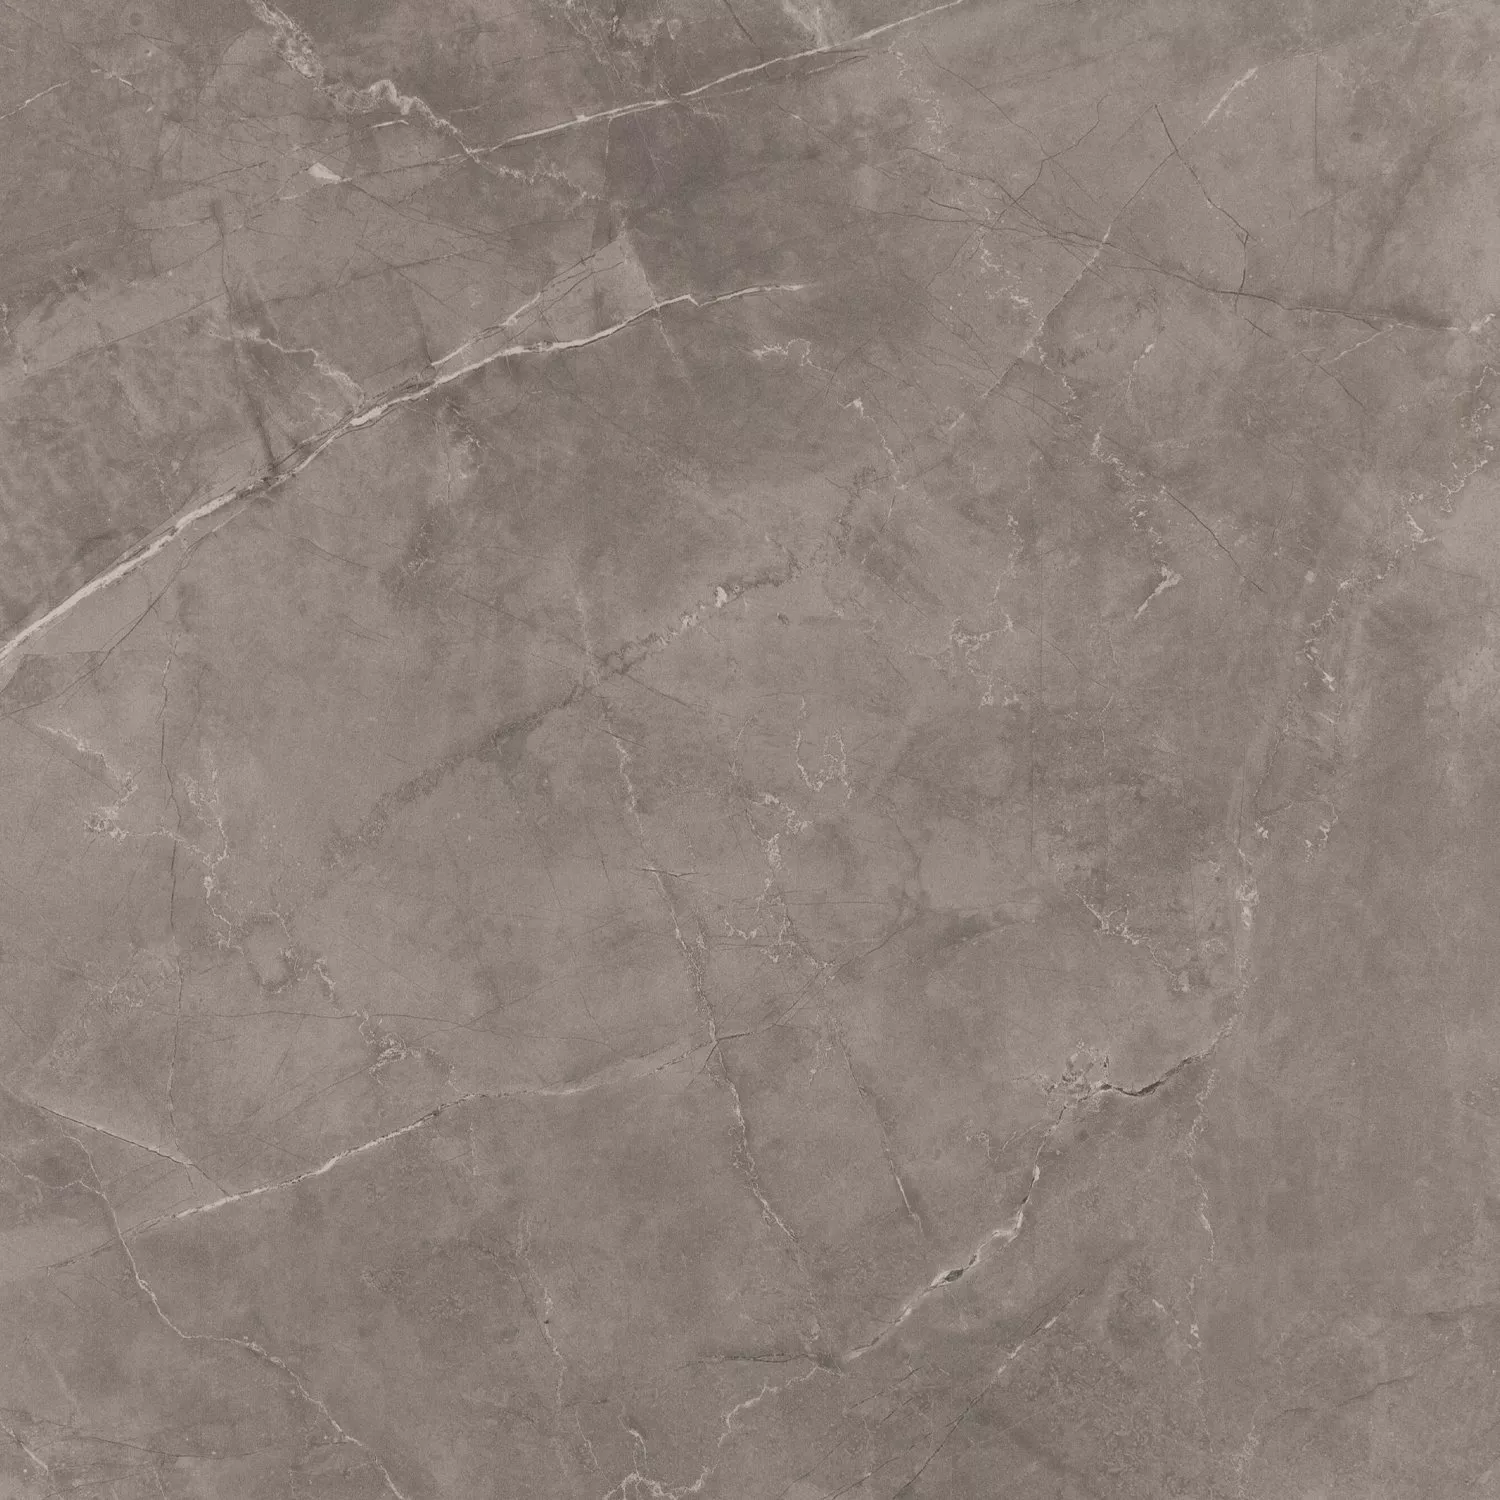 Vzorek Podlahové Dlaždice Mramorový Vzhled Imperial Grey 80x80cm